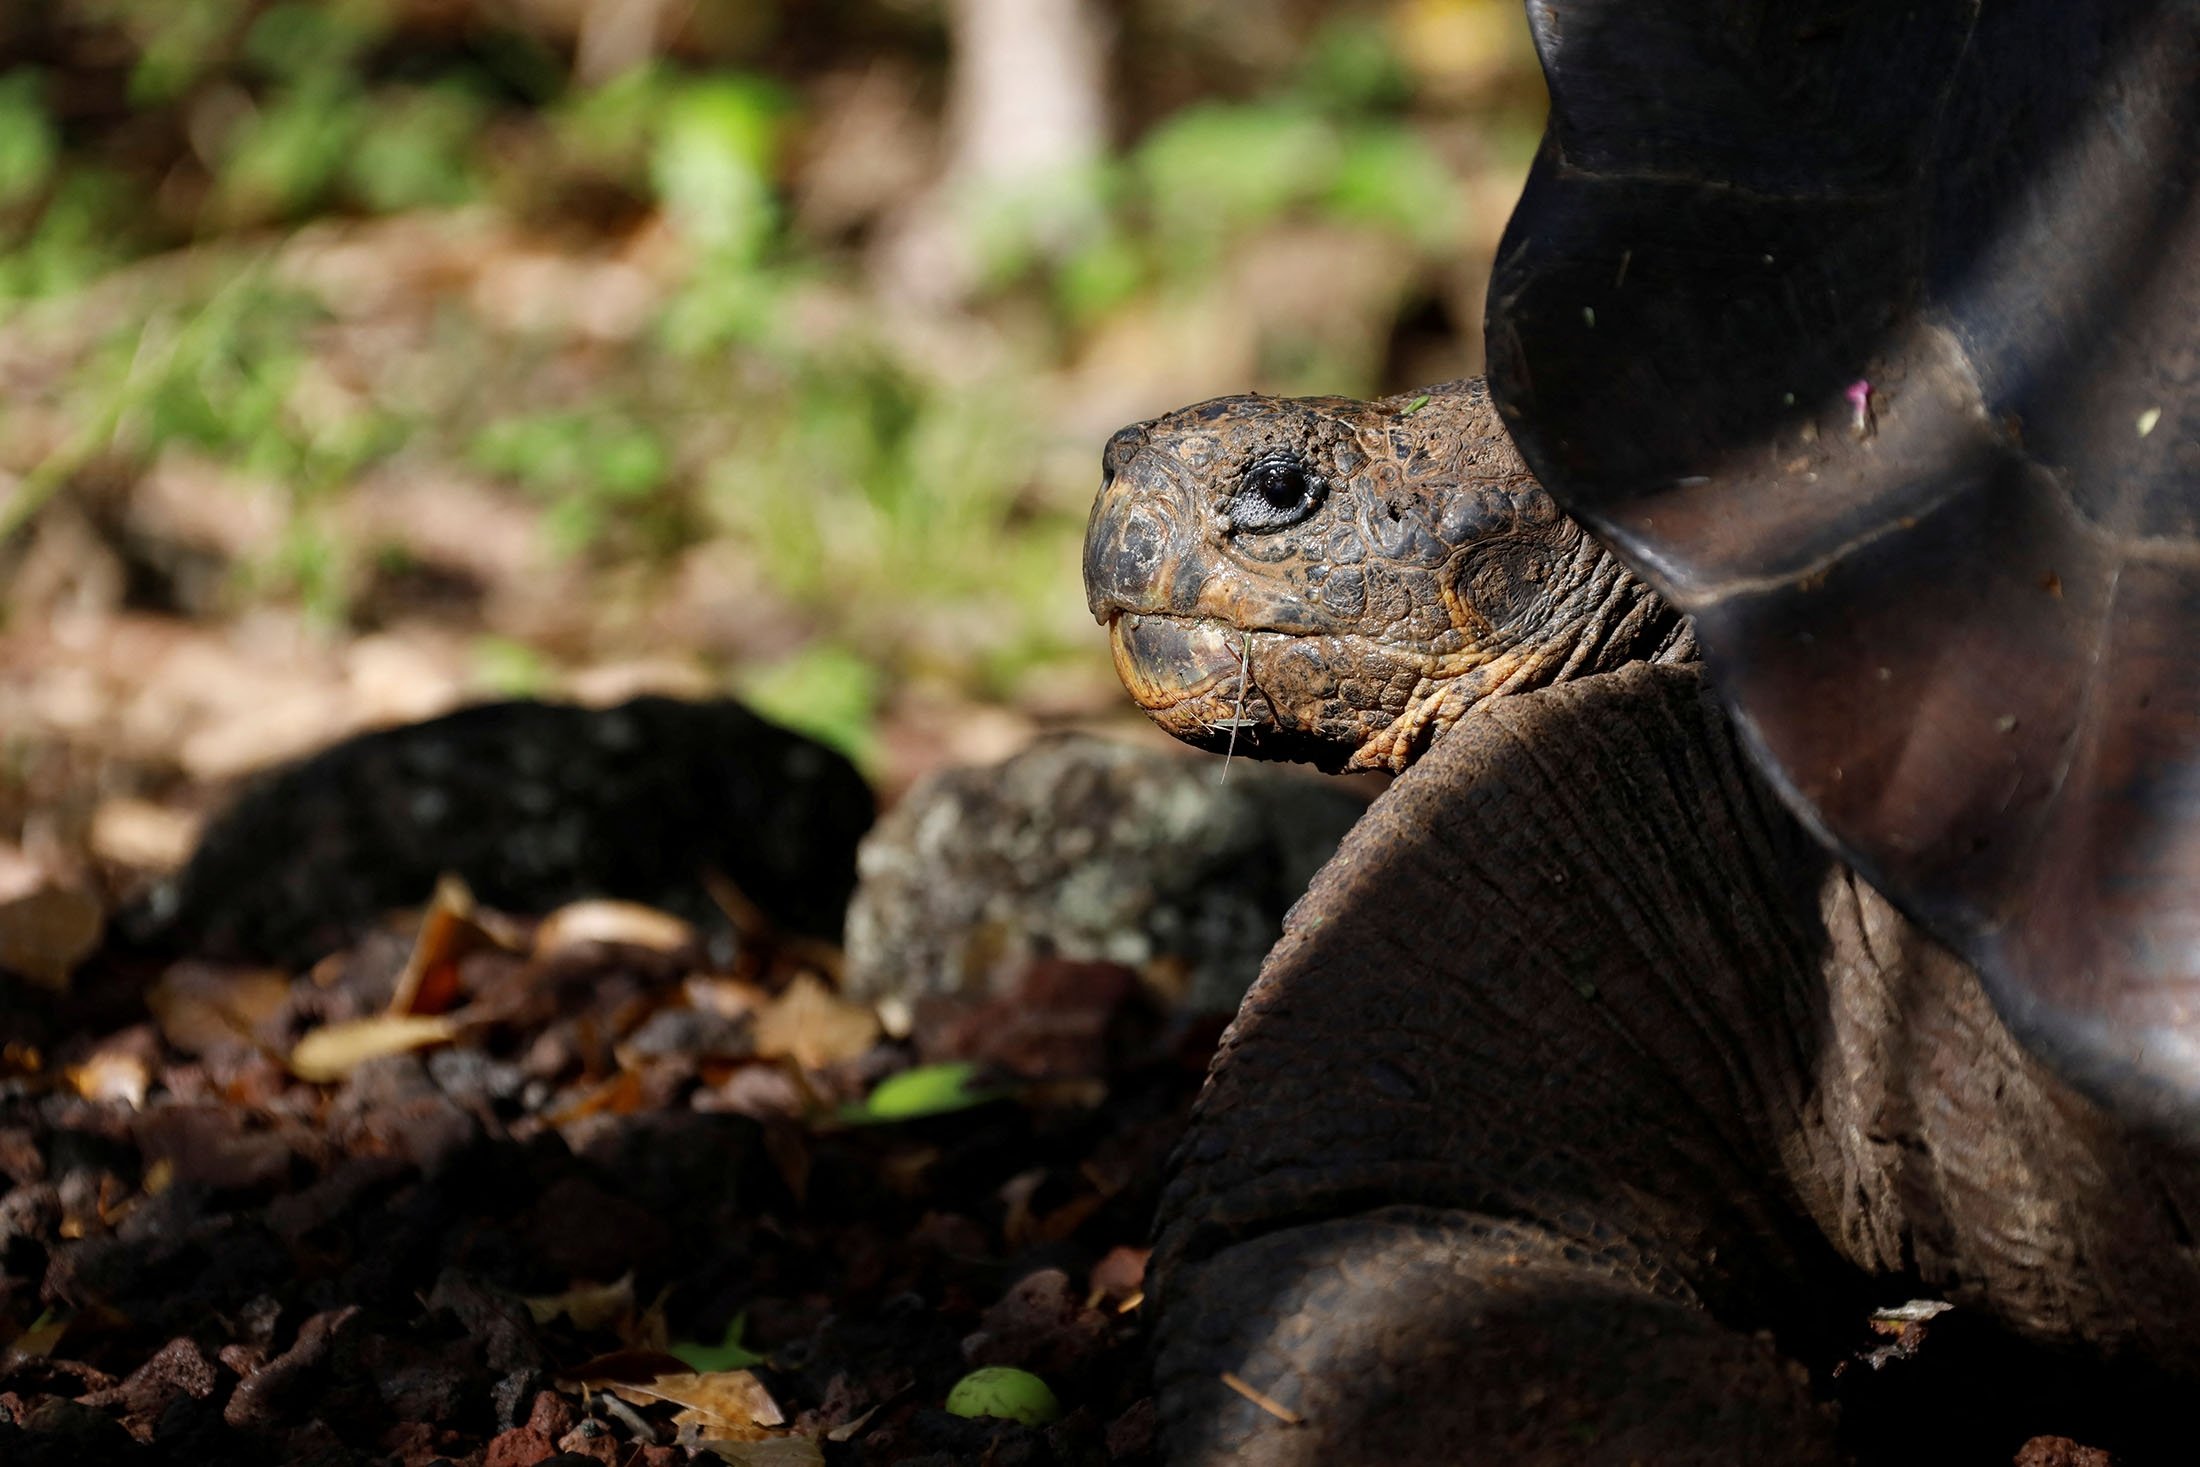 Seekor kura-kura, yang sebelumnya diidentifikasi sebagai Chelonoidis chathamensis, terlihat di pulau San Cristobal, Kepulauan Galapagos, Ekuador, 13 Februari 2019. (Foto Reuters)